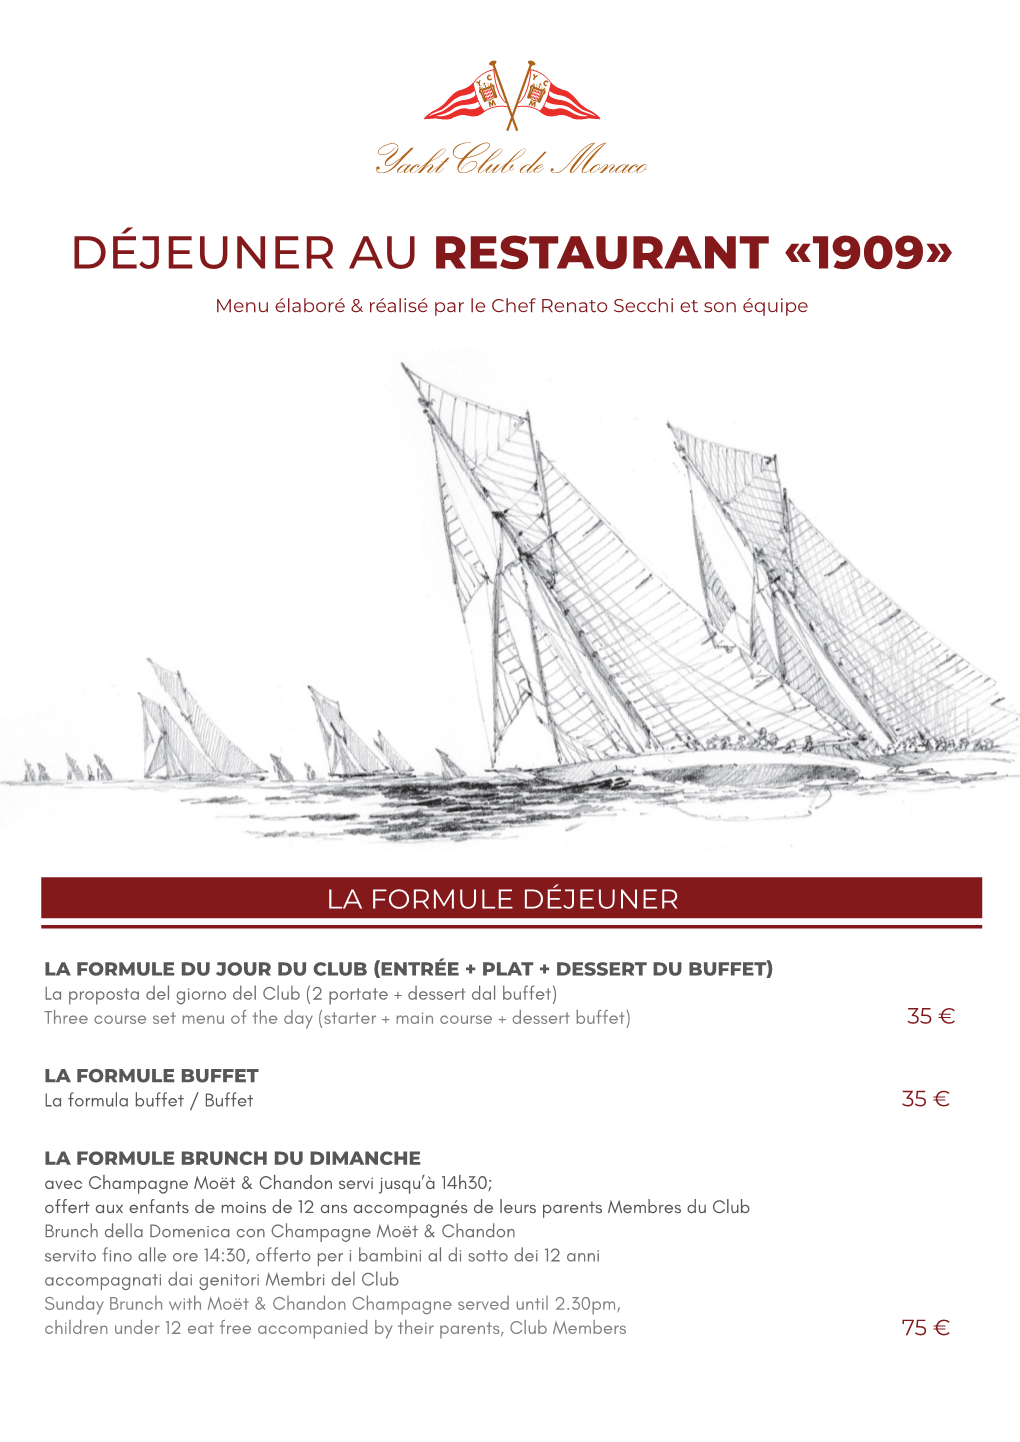 DÉJEUNER AU RESTAURANT «1909» Menu Élaboré & Réalisé Par Le Chef Renato Secchi Et Son Équipe